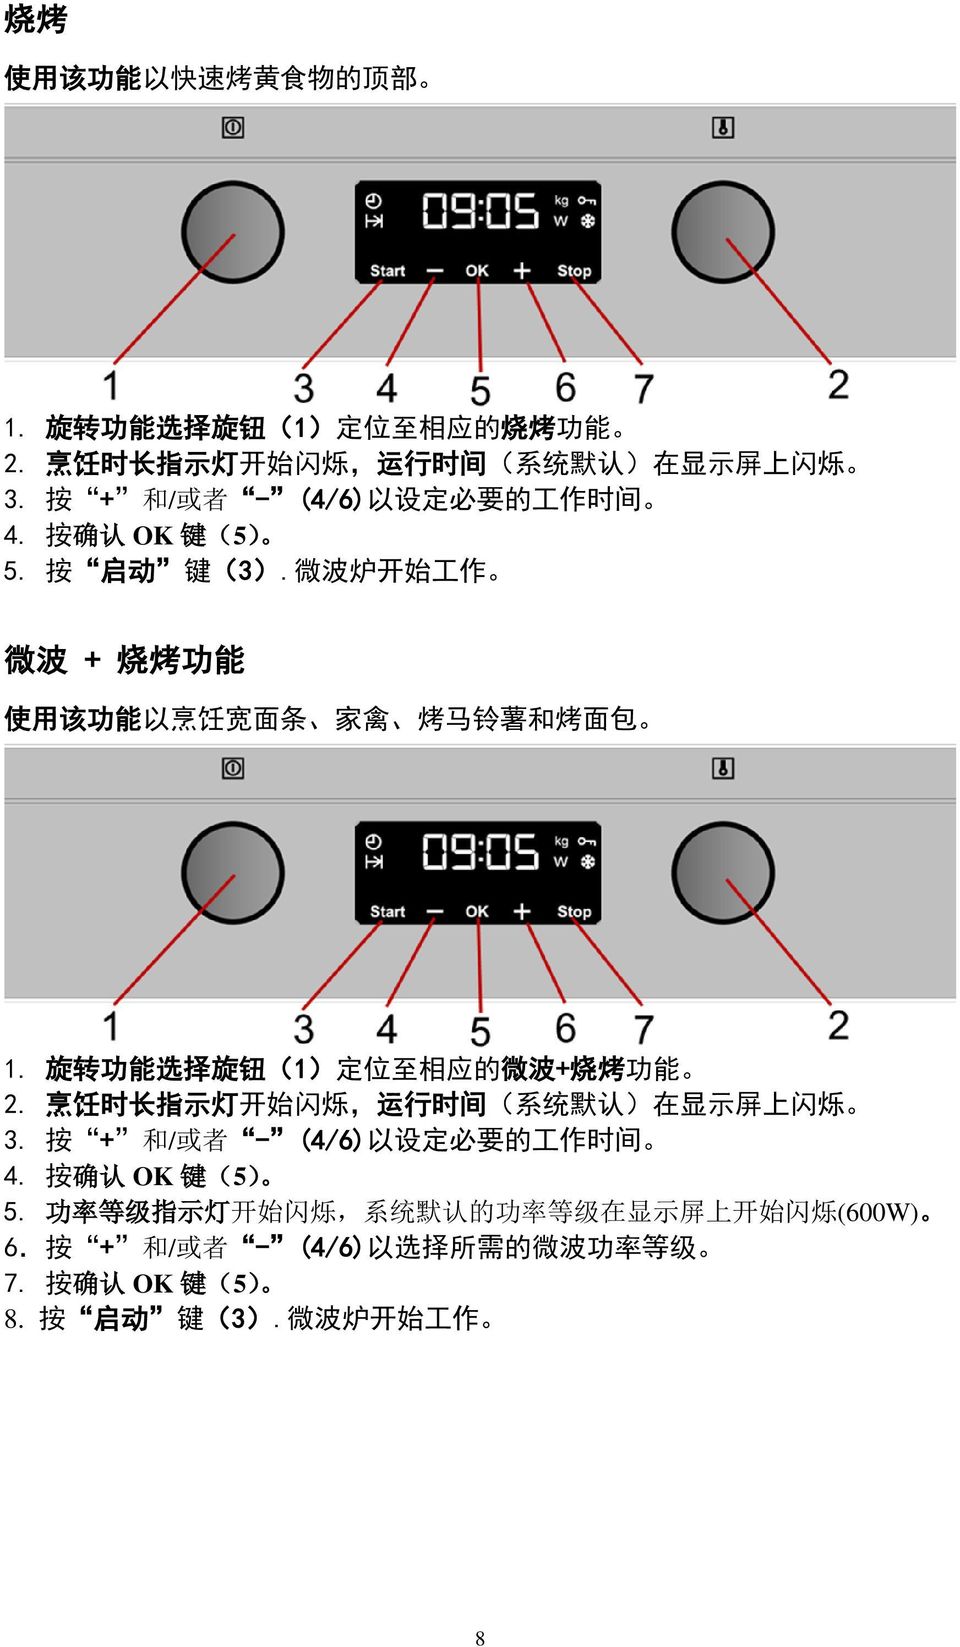 旋 转 功 能 选 择 旋 钮 (1) 定 位 至 相 应 的 微 波 + 烧 烤 功 能 2. 烹 饪 时 长 指 示 灯 开 始 闪 烁, 运 行 时 间 ( 系 统 默 认 ) 在 显 示 屏 上 闪 烁 3. 按 + 和 / 或 者 - (4/6) 以 设 定 必 要 的 工 作 时 间 4.